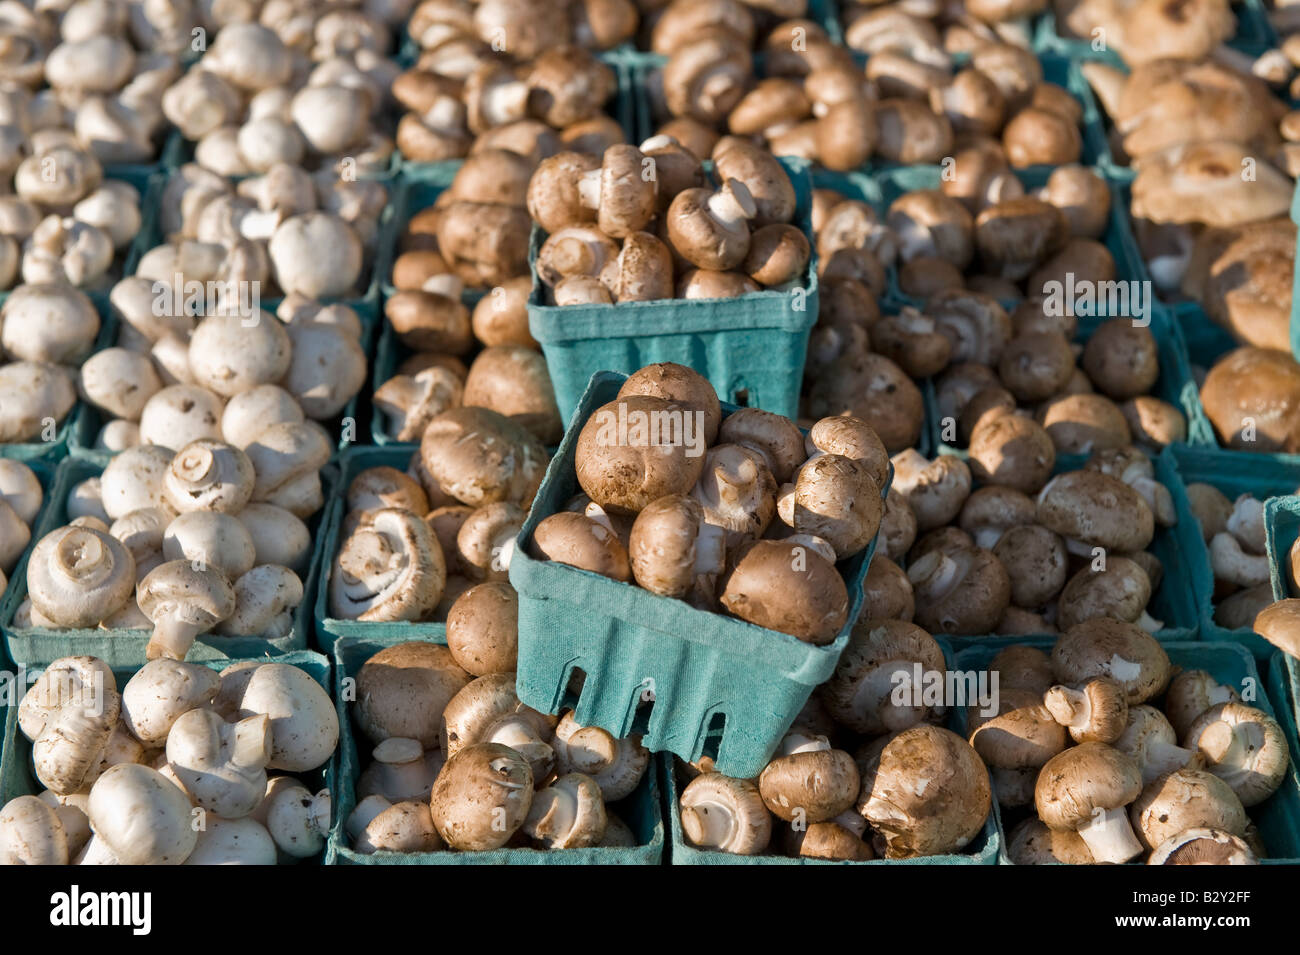 Les champignons sur l'affichage à un marché de producteurs Banque D'Images